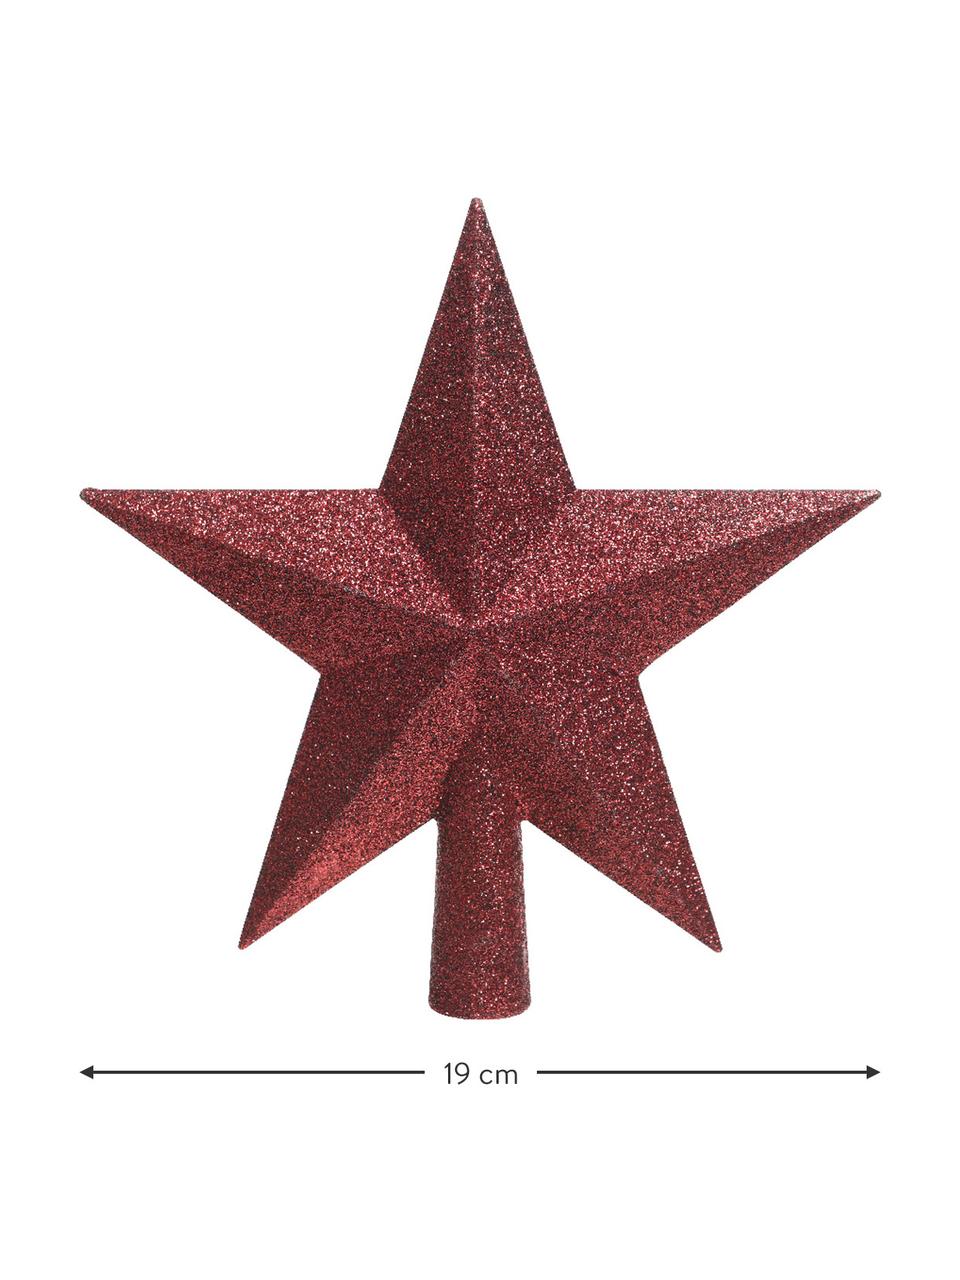 Nerozbitná špice na vánoční stromeček Morning Star, Ø 19 cm, Umělá hmota, třpytky, Červená, Š 19 cm, V 19 cm